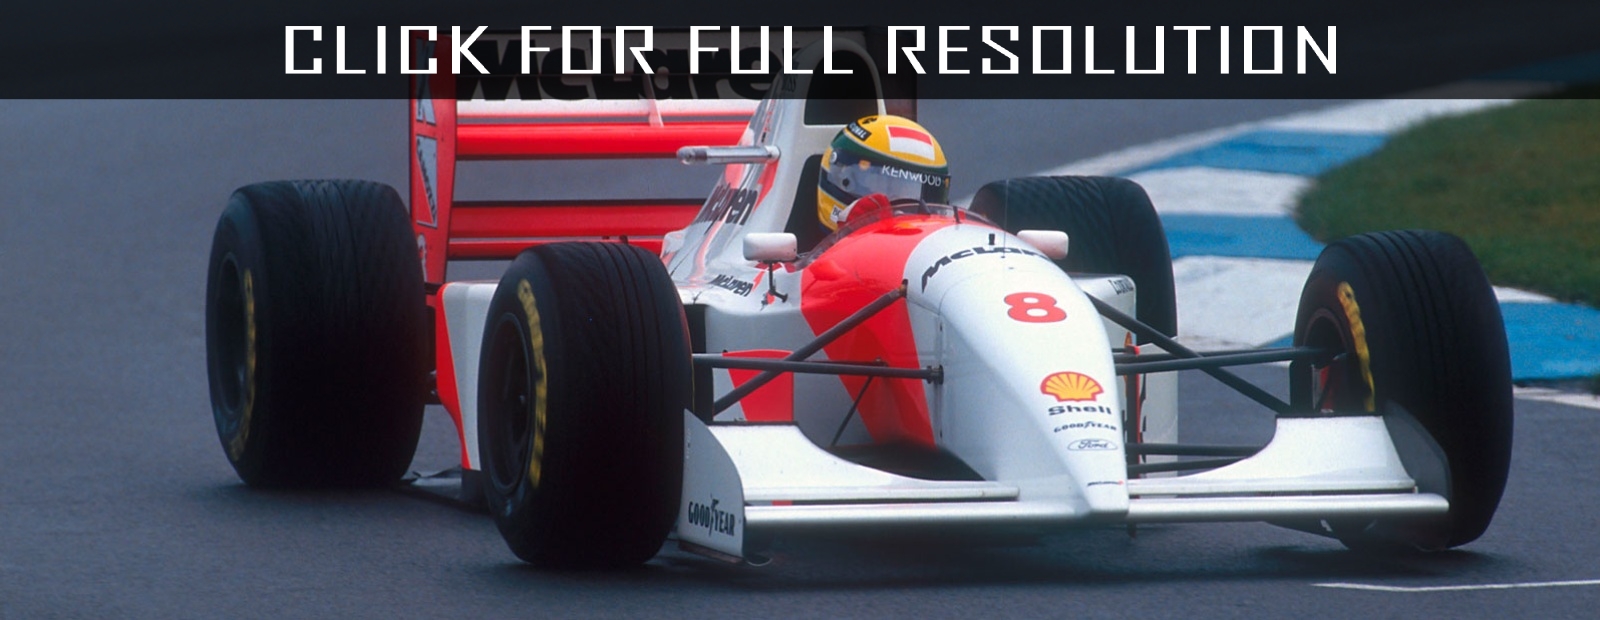 1993 Mclaren F1